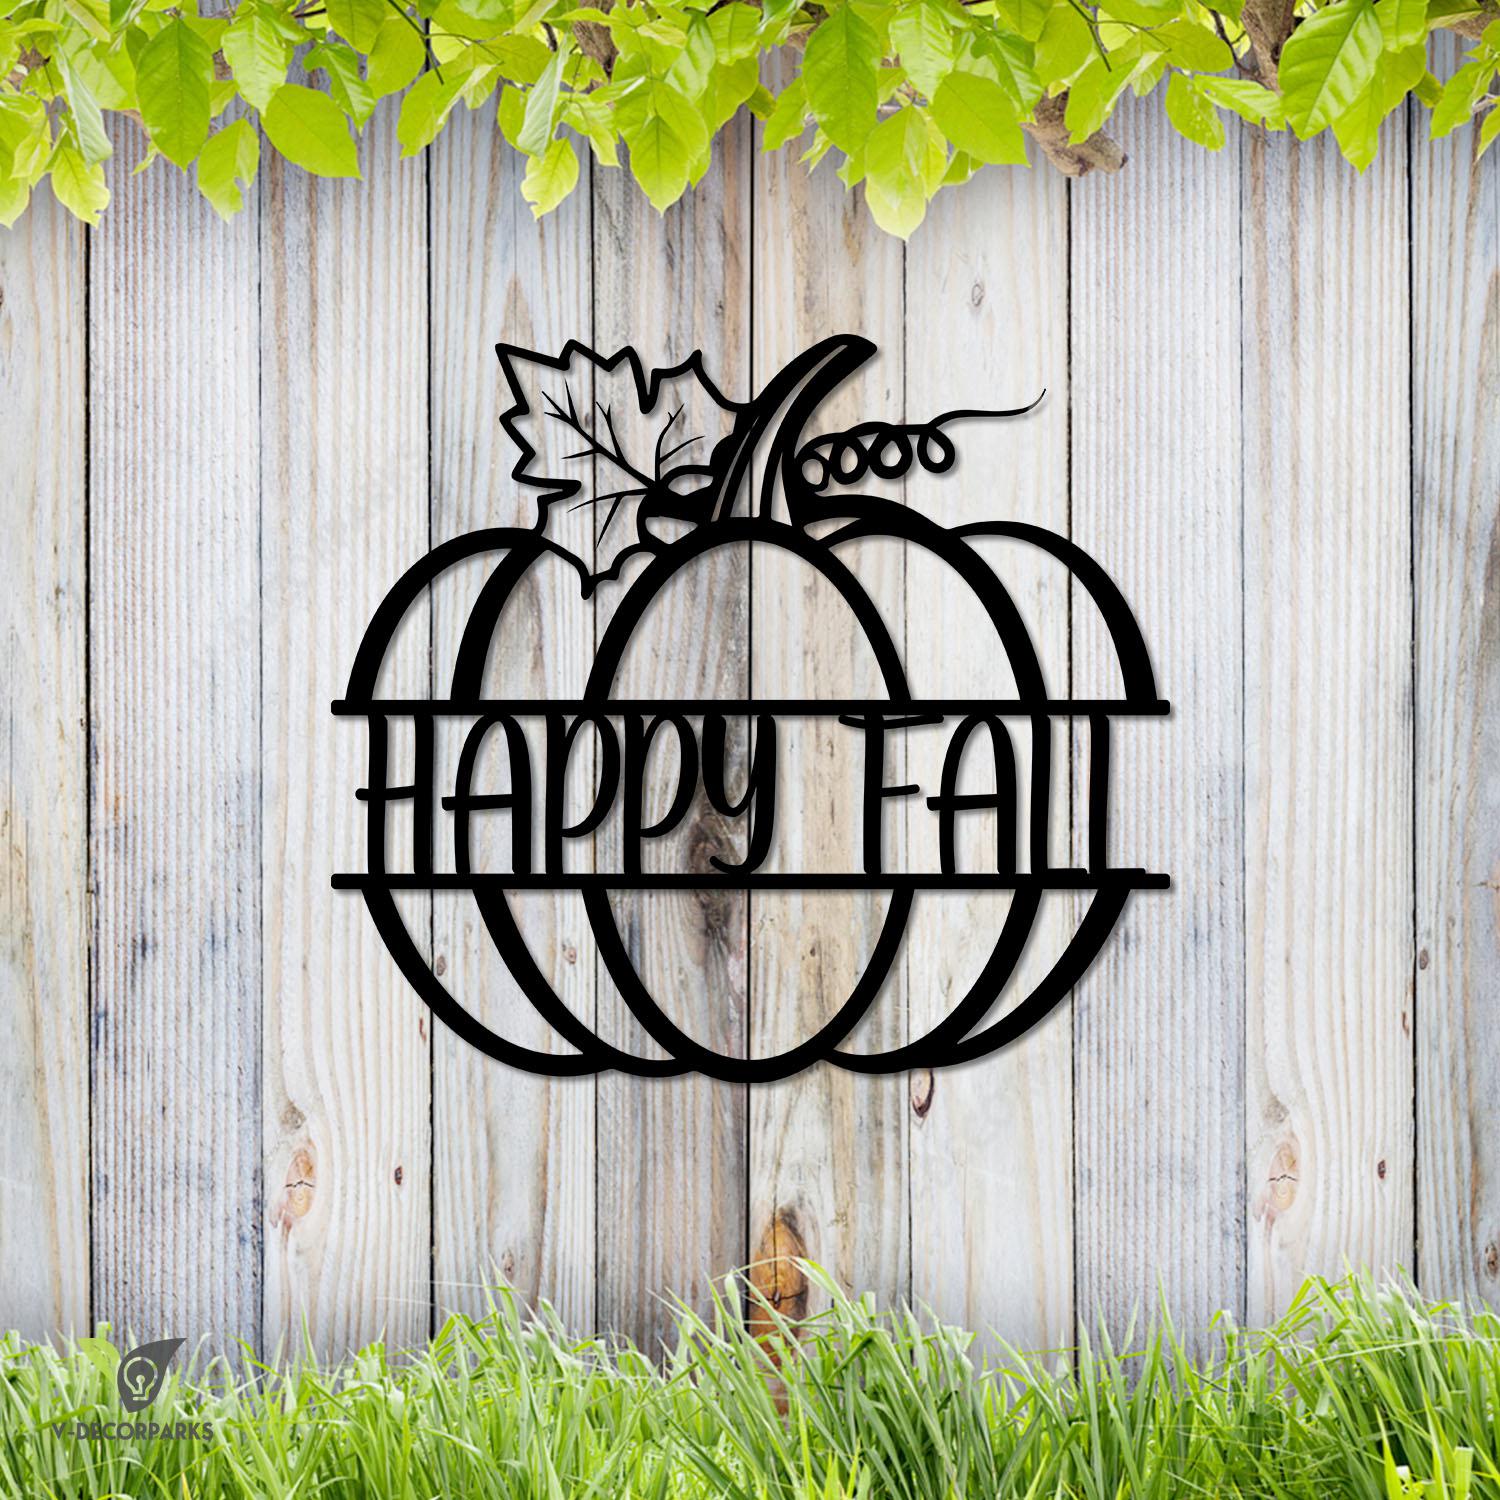 Happy Fall Pumpkin Metal Art, Happy Fall Porch Exterior Decoration Metal Sign